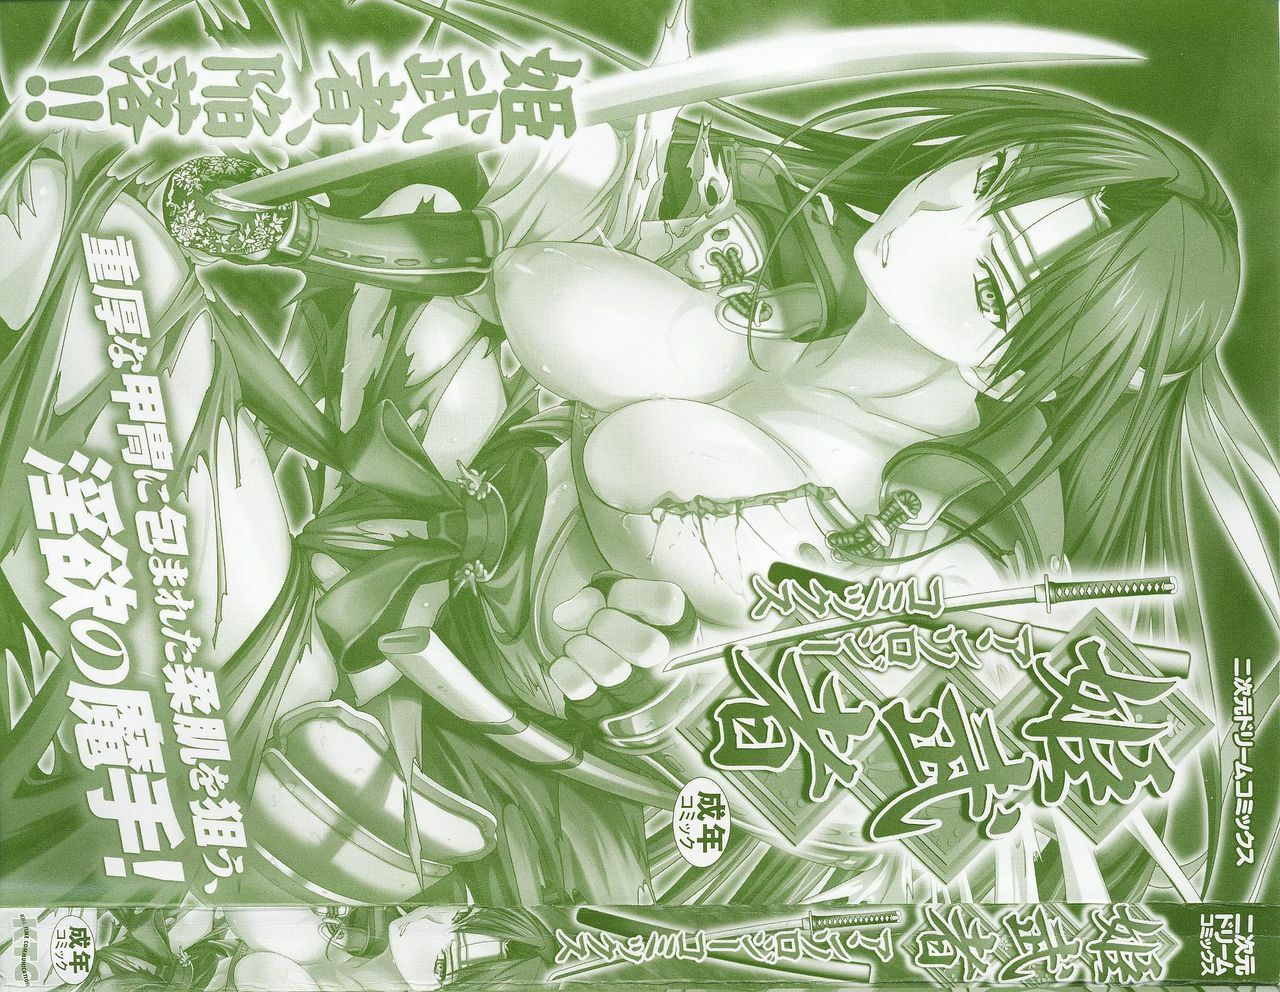 [Anthology] Hime Musha Anthology Comics | Princess Warrior Anthology Comics page 3 full